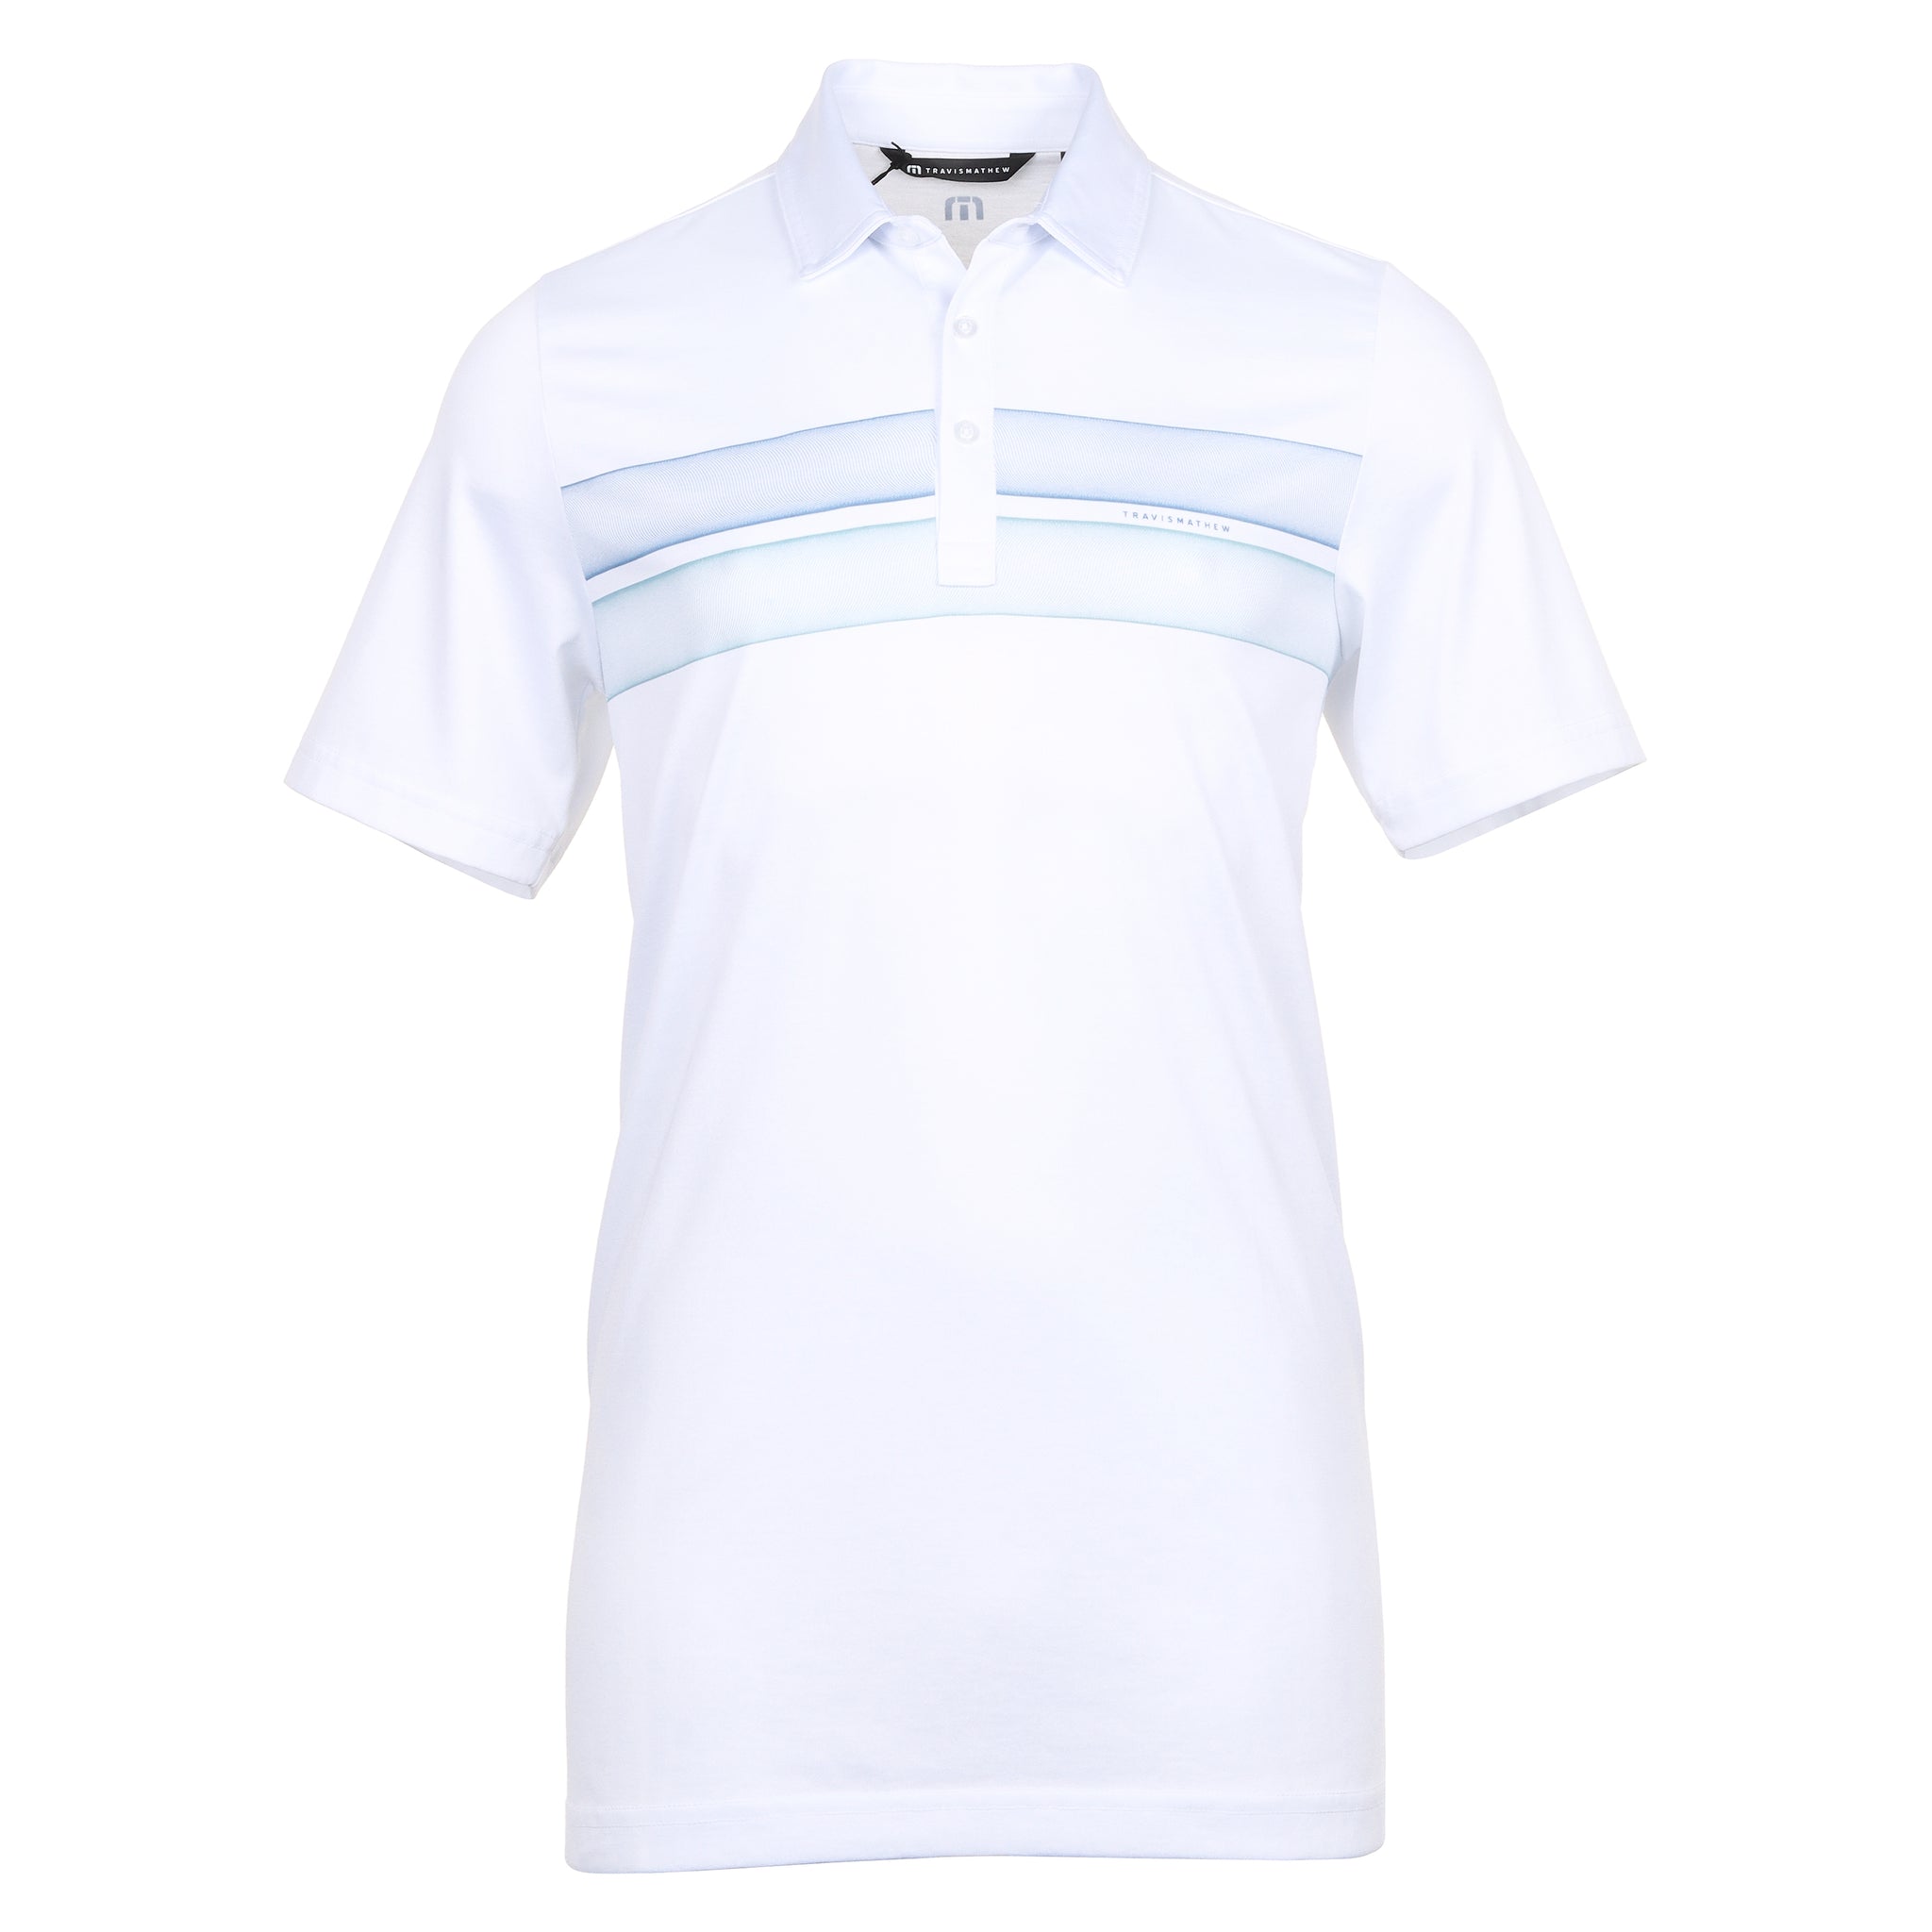 TravisMathew Ocean Time Polo Shirt 1MAA014 White & Function18